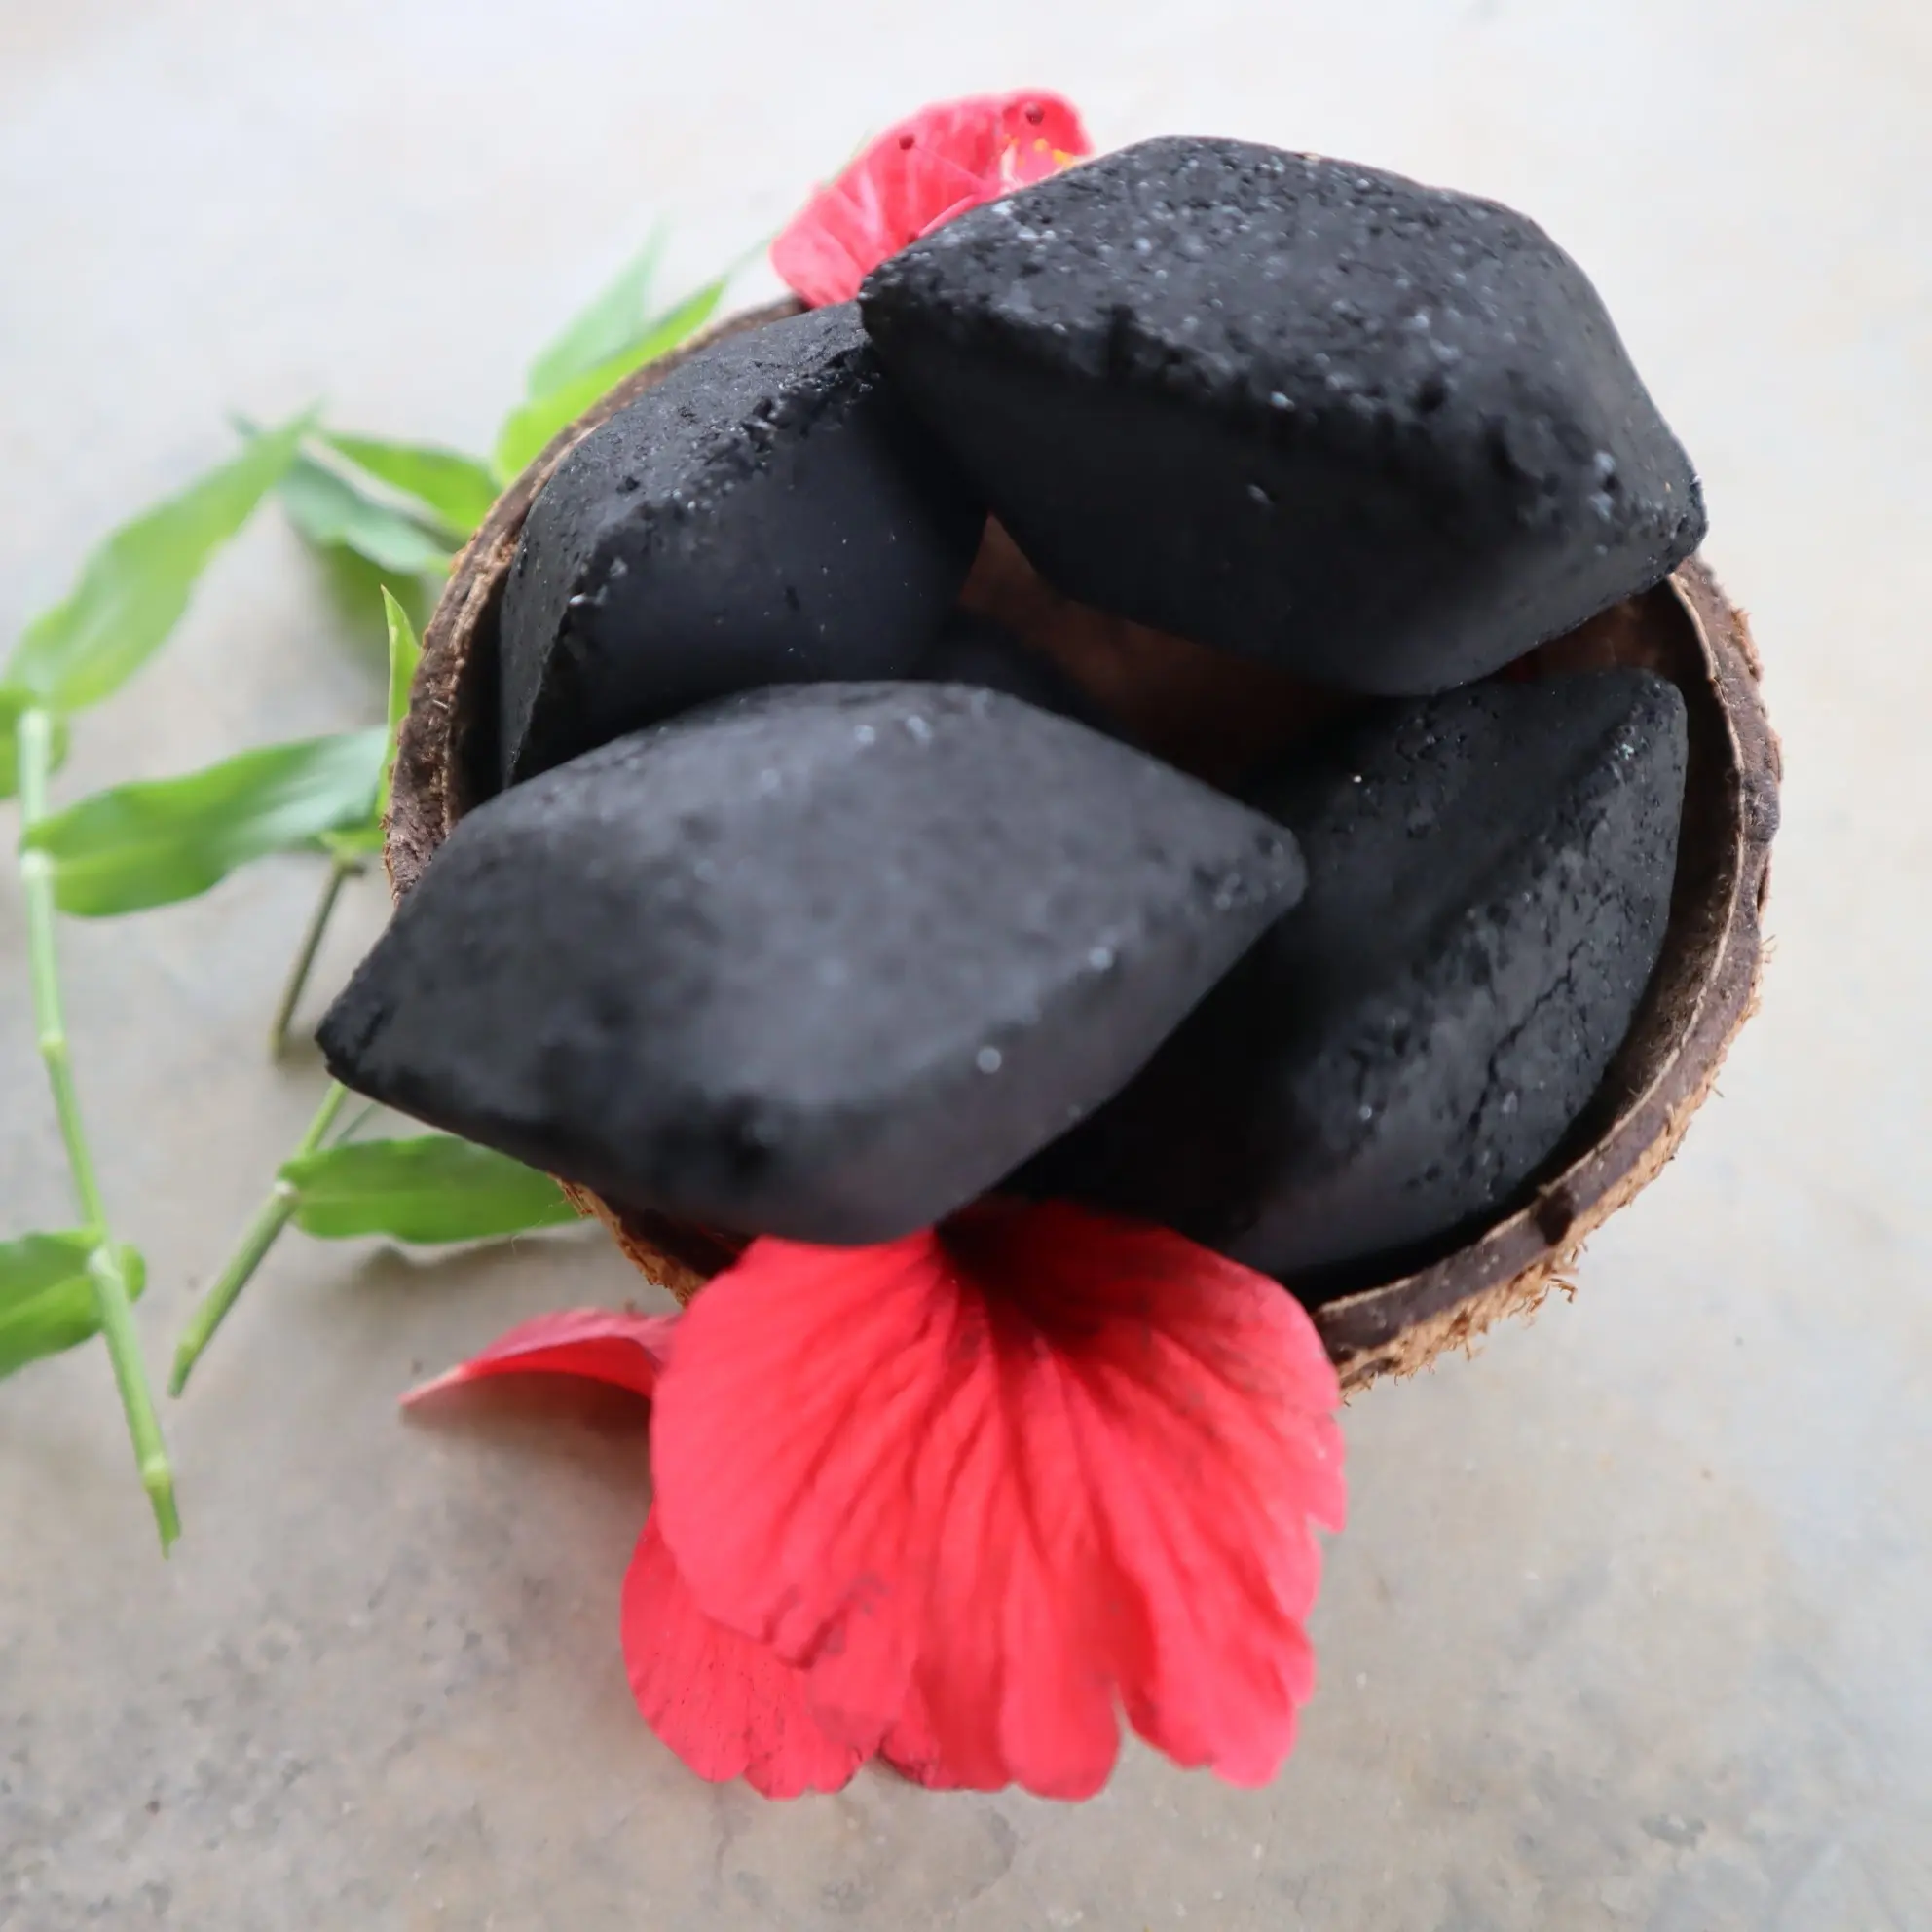 Divierte tus vacaciones con briquetas de carbón de cáscara de coco natural para asar a la parrilla